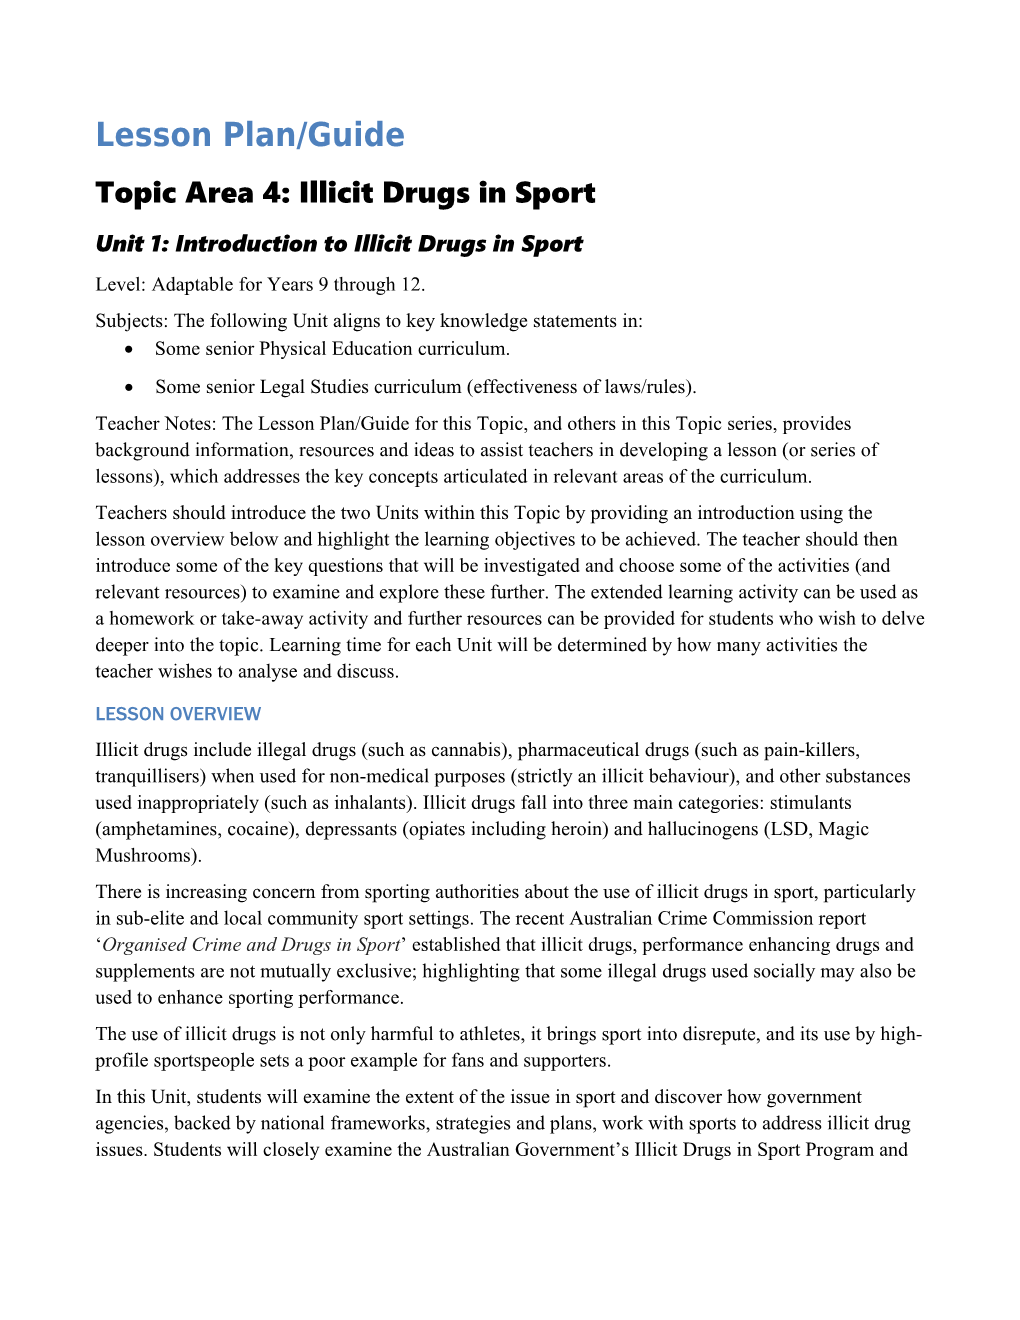 Illicit Drugs in Sport